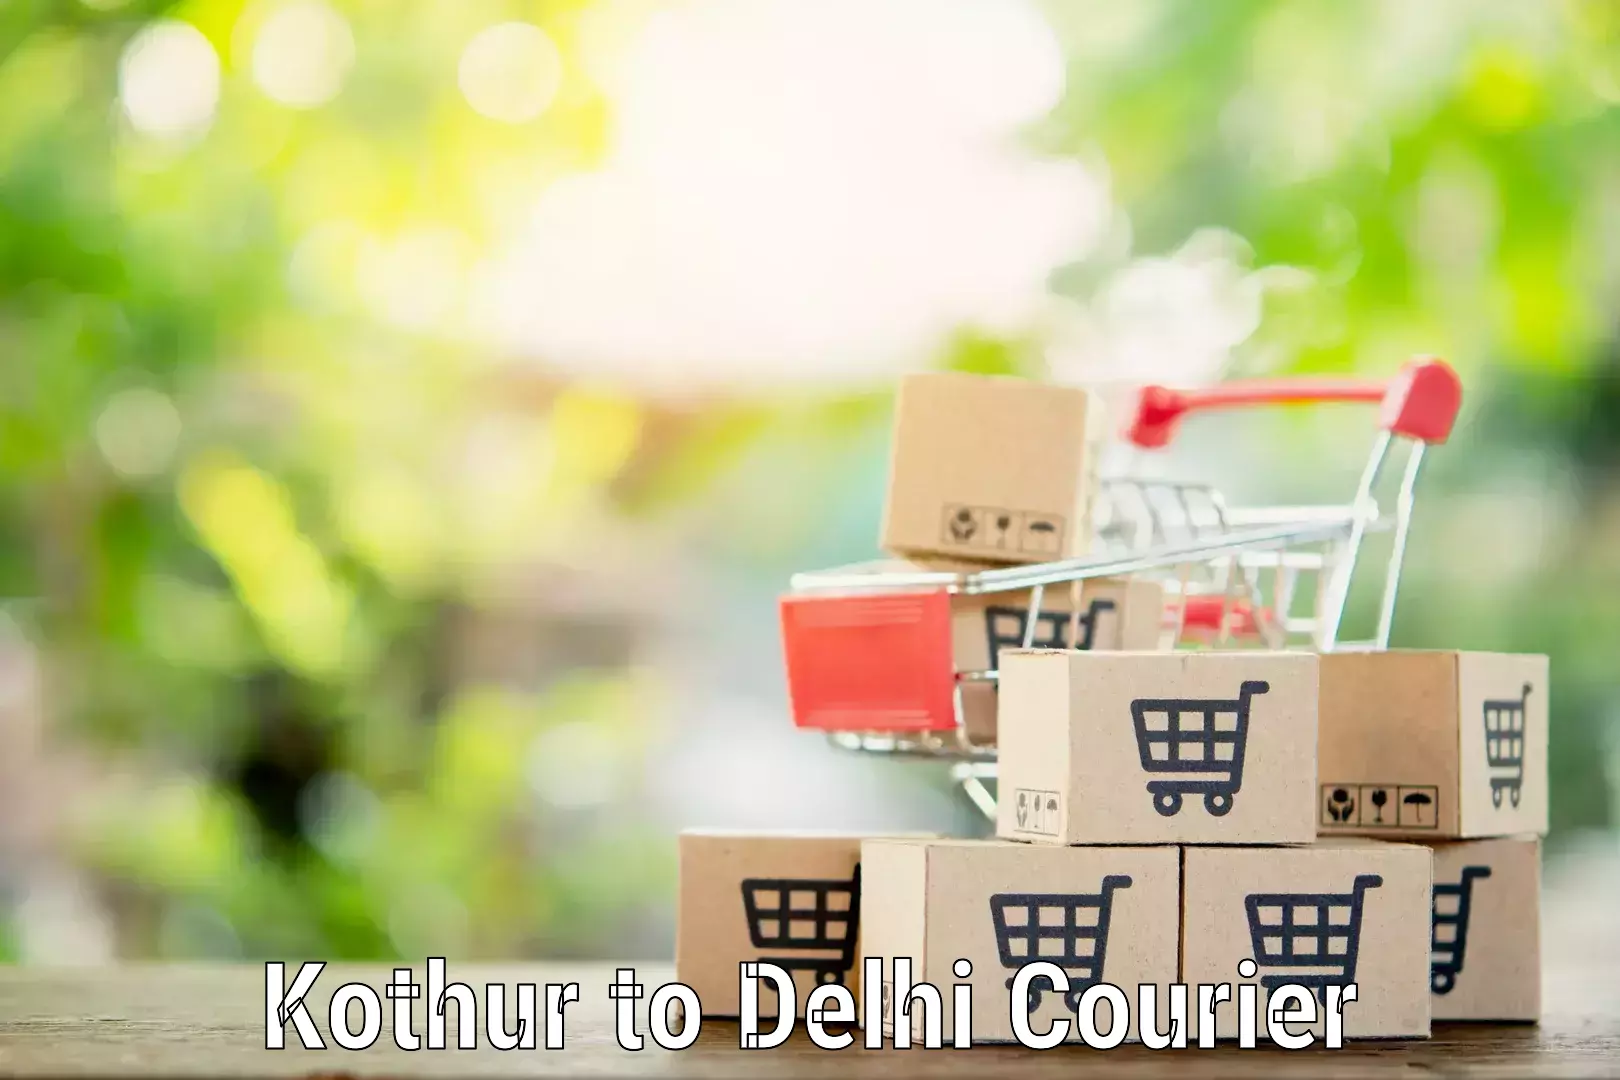 Household goods transport Kothur to NIT Delhi